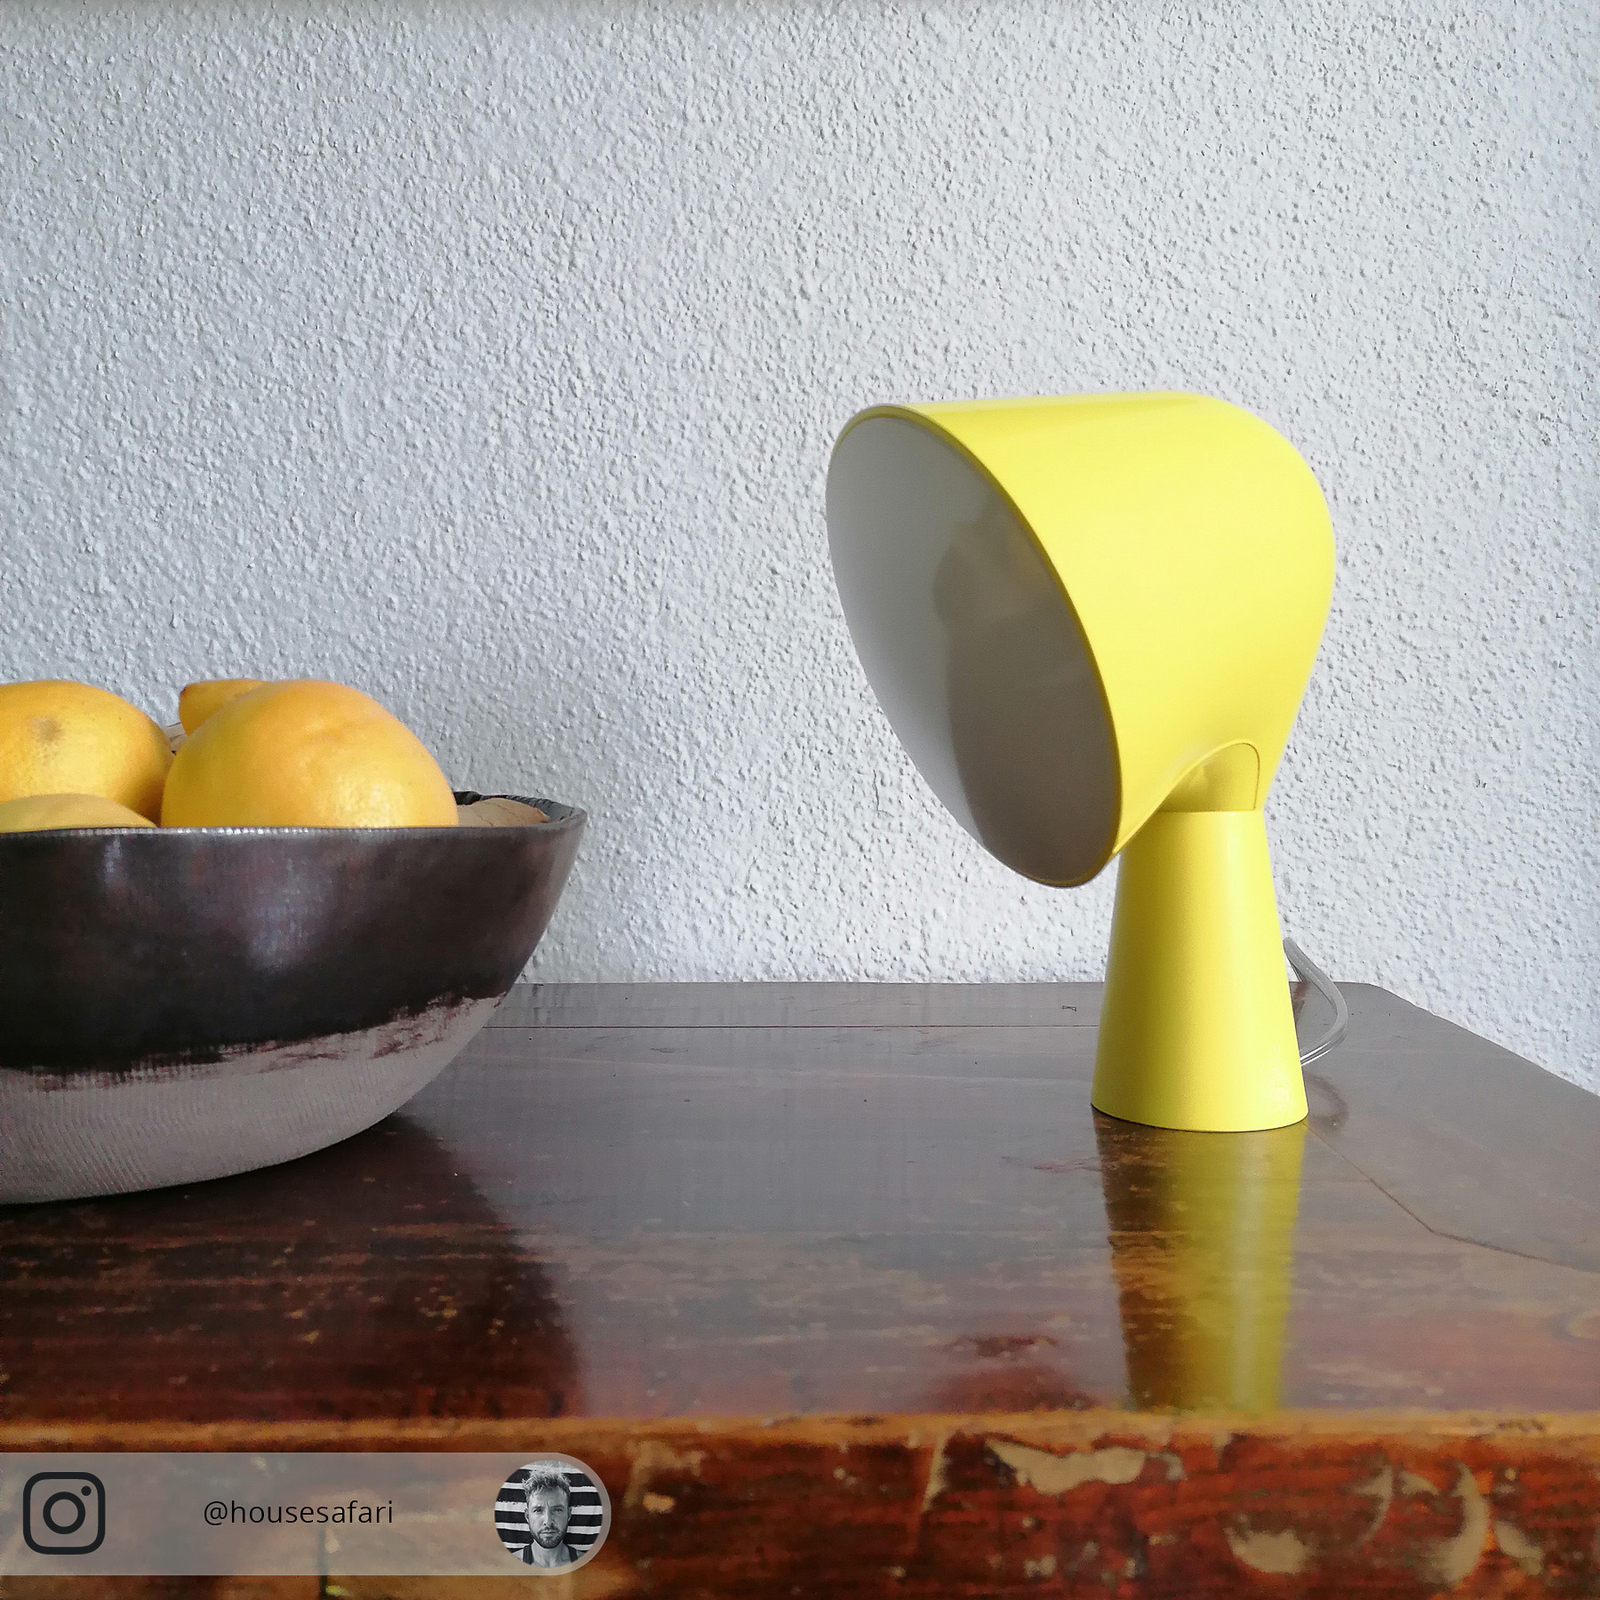 Foscarini Binic design tafellamp, geel